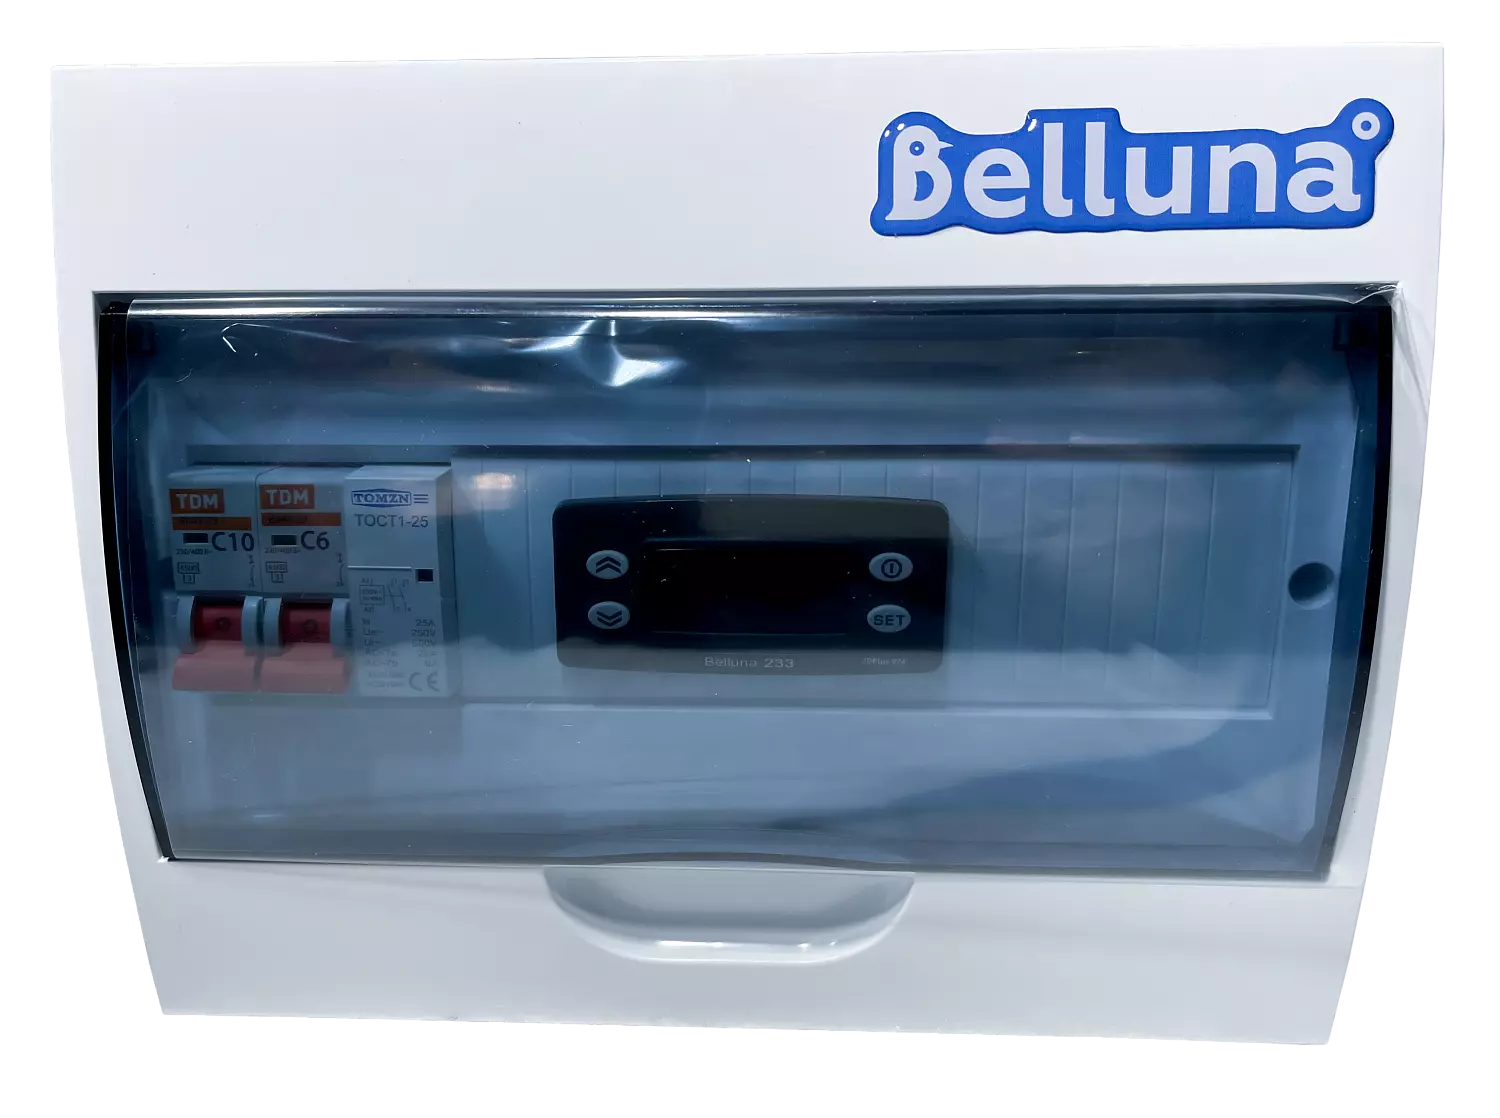 сплит-система Belluna S342 Екатеринбург